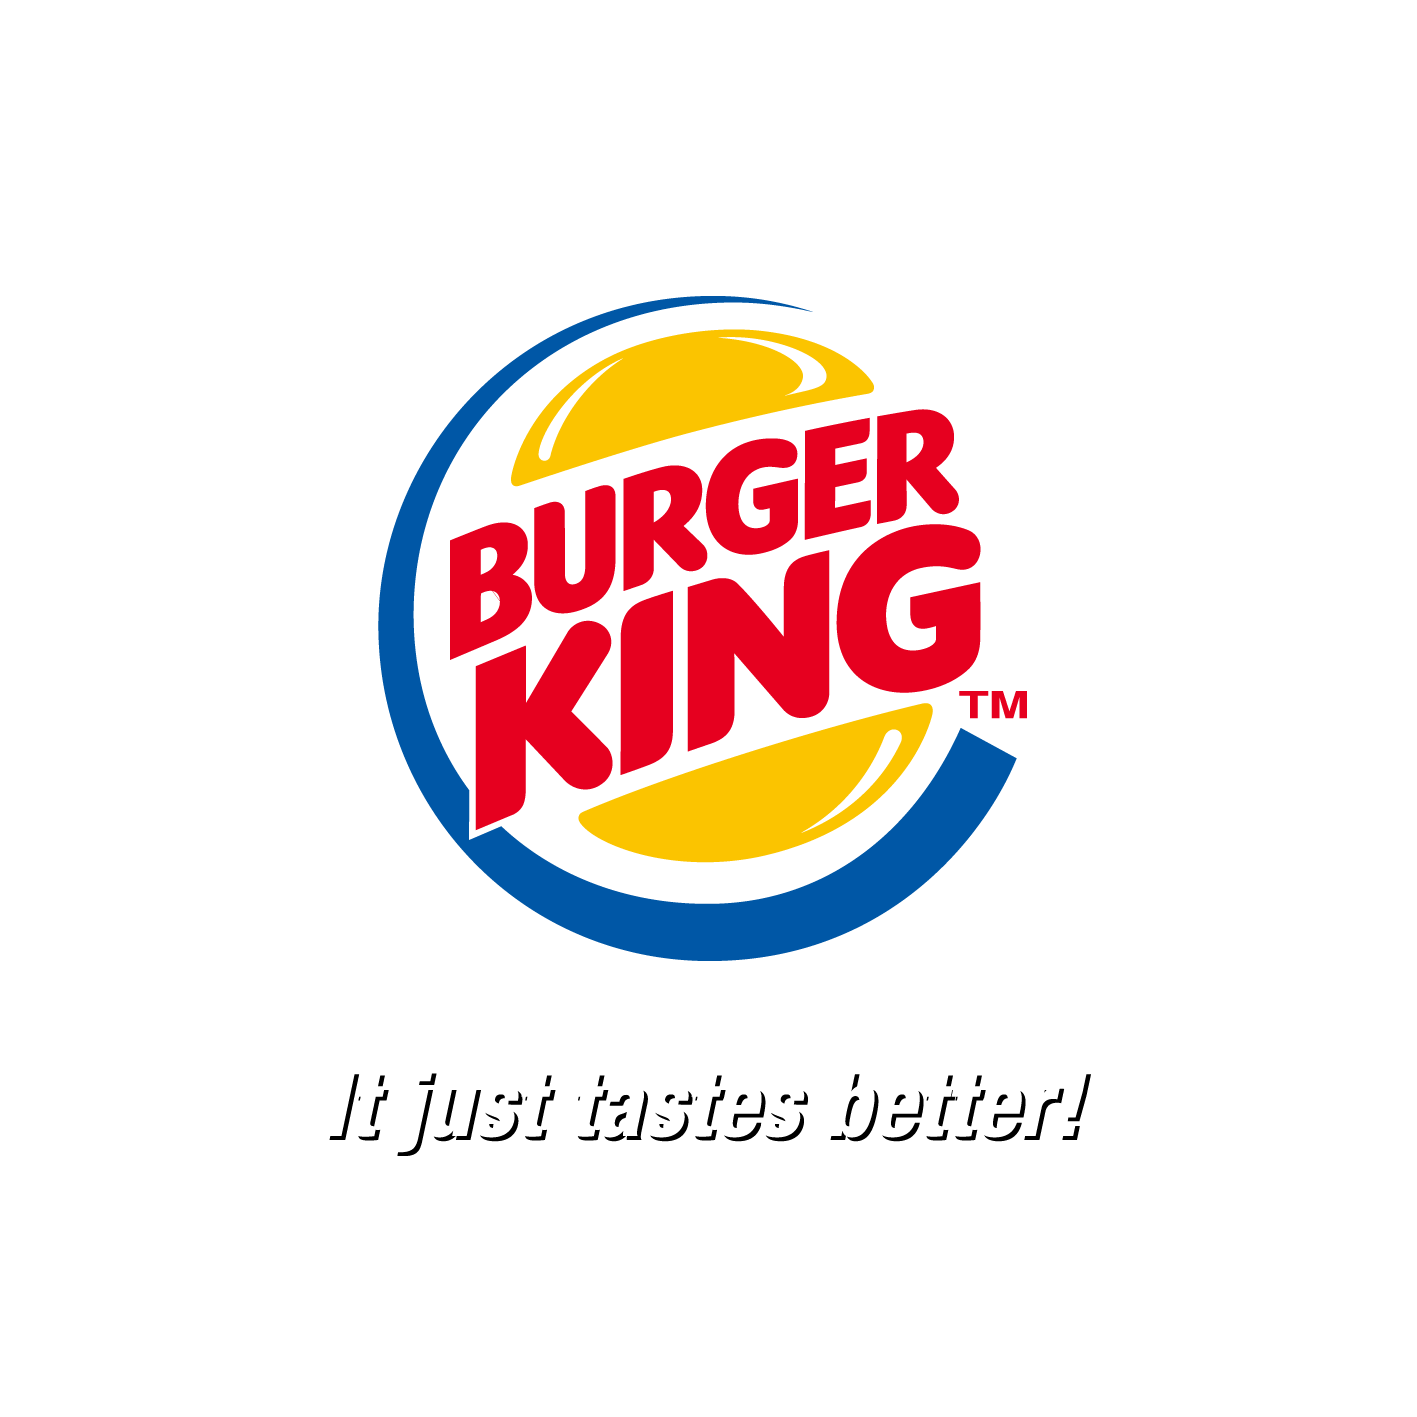 King Hamburger Pickled Burger Vector Cucumber Kfc PNG Image